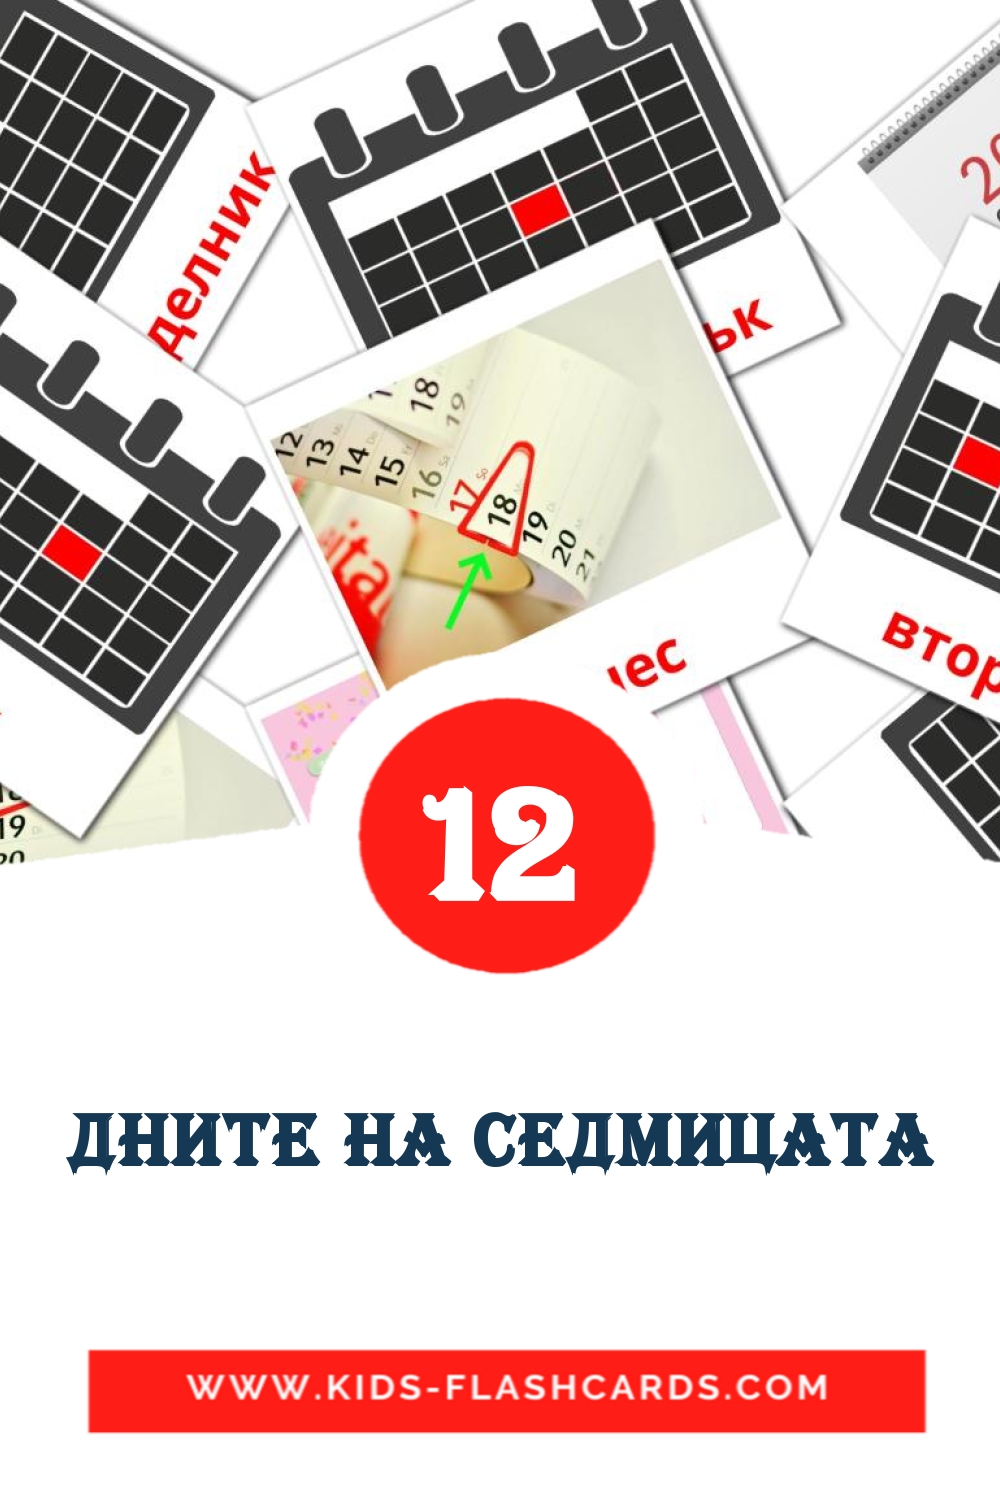 12 carte illustrate di Дните на седмицата per la scuola materna in bulgaro